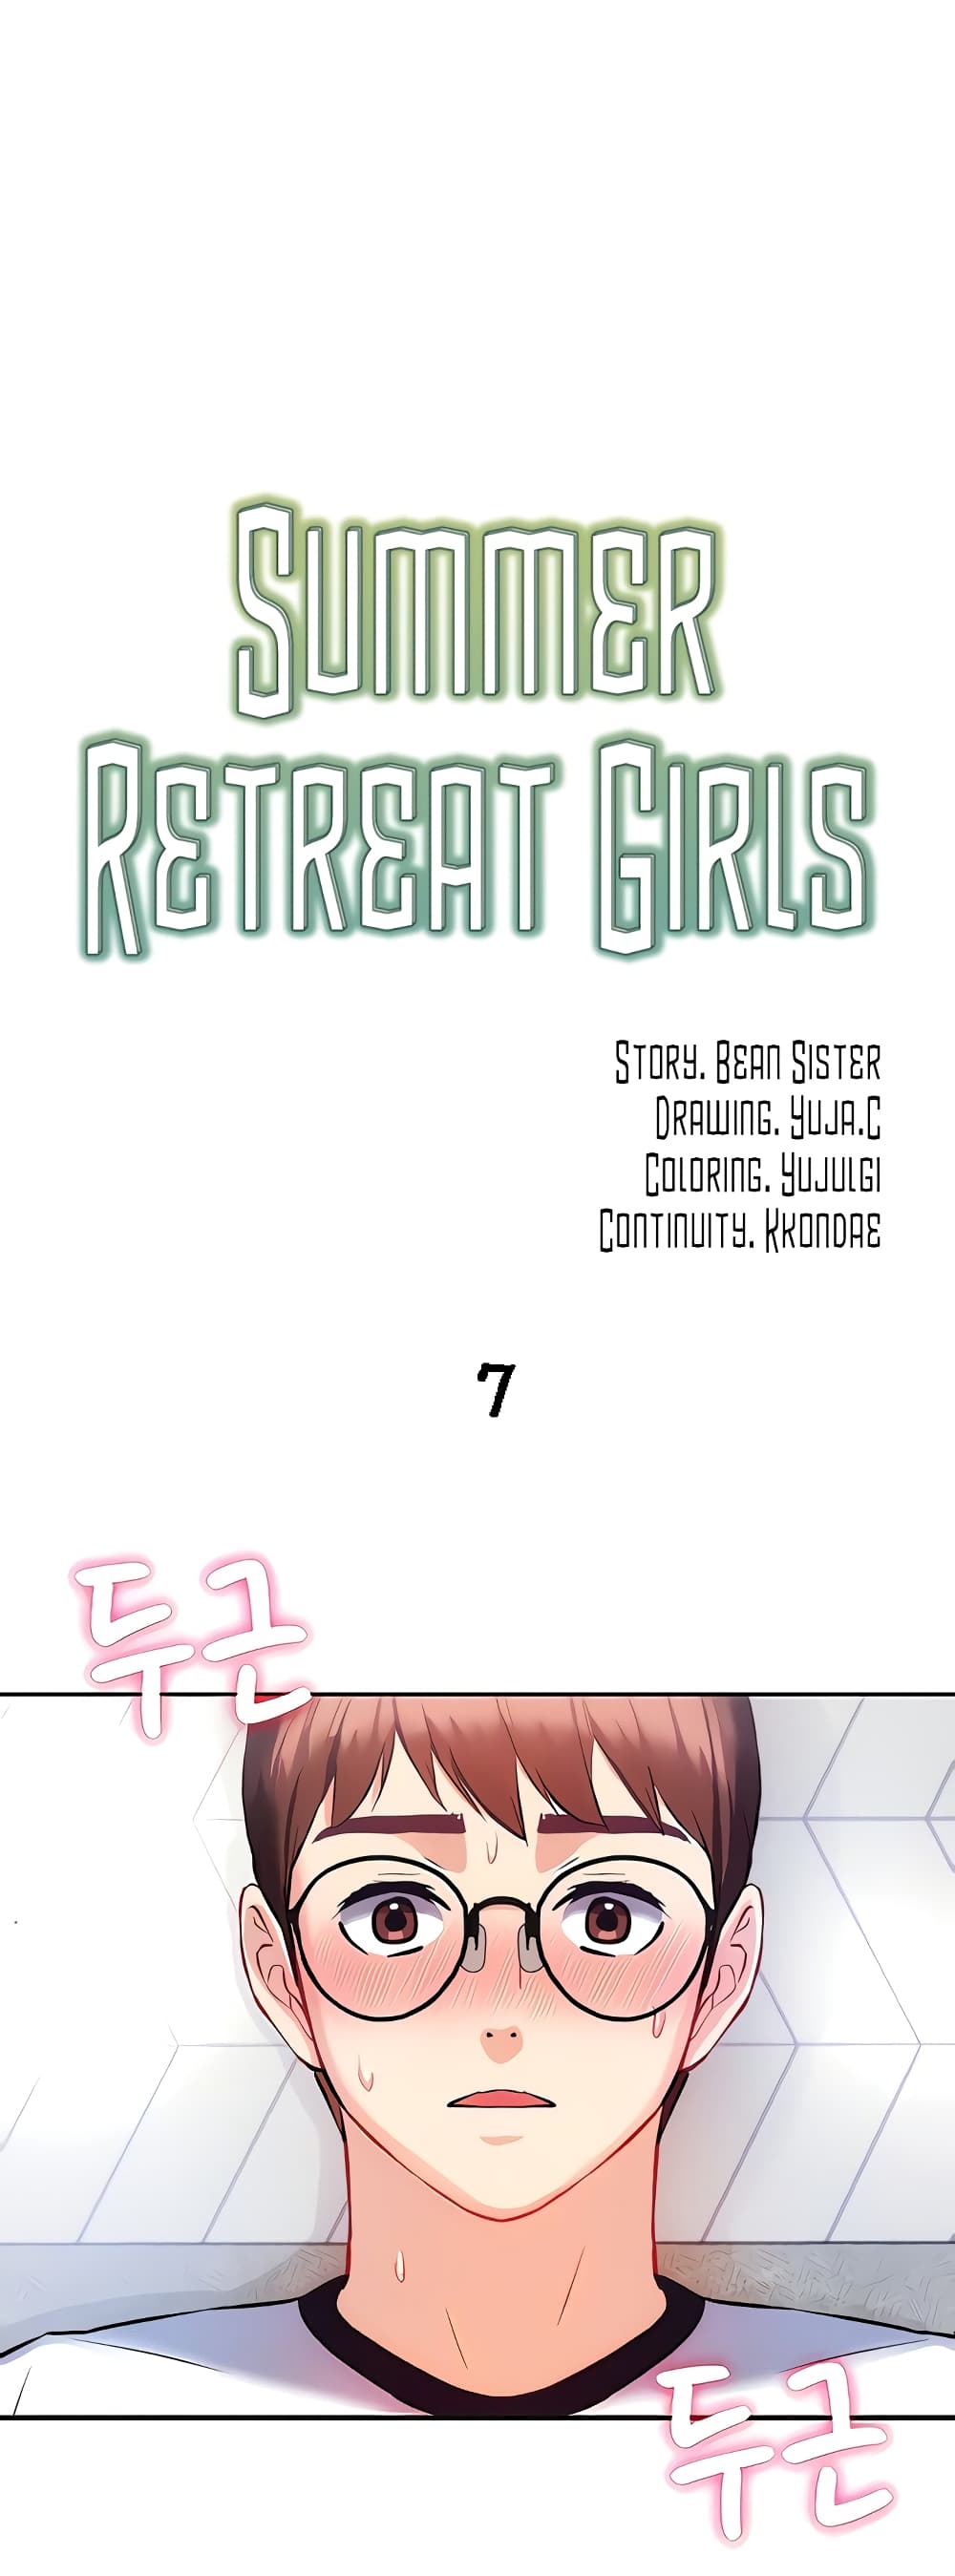 Summer Retreat Girls 7 (1)